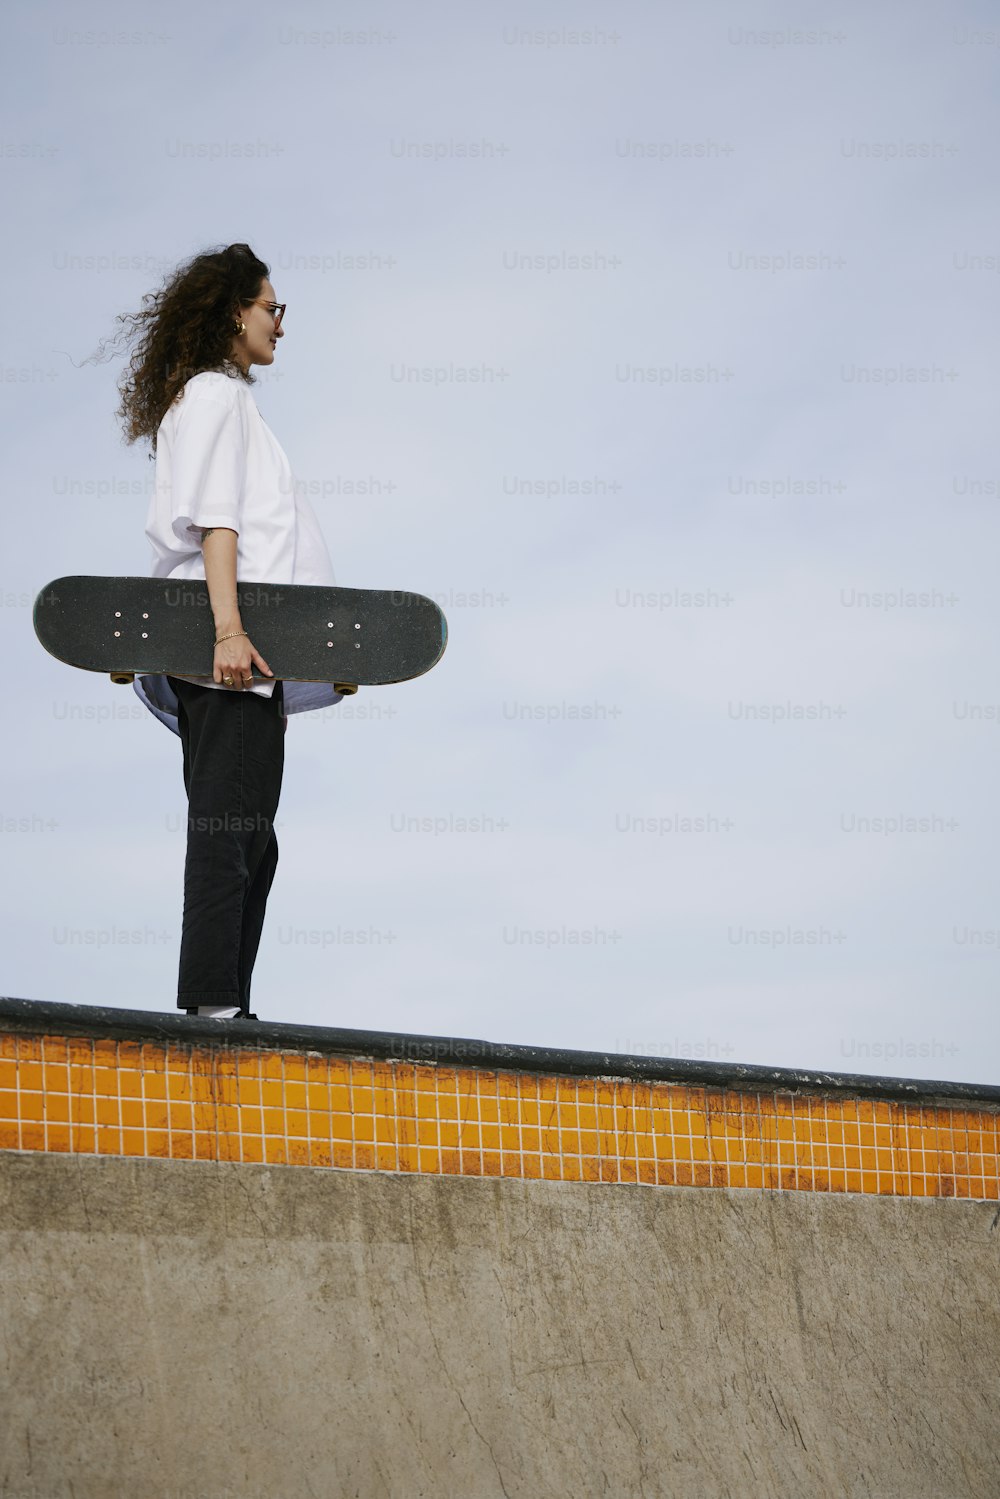 eine frau, die ein skateboard auf einer rampe hält